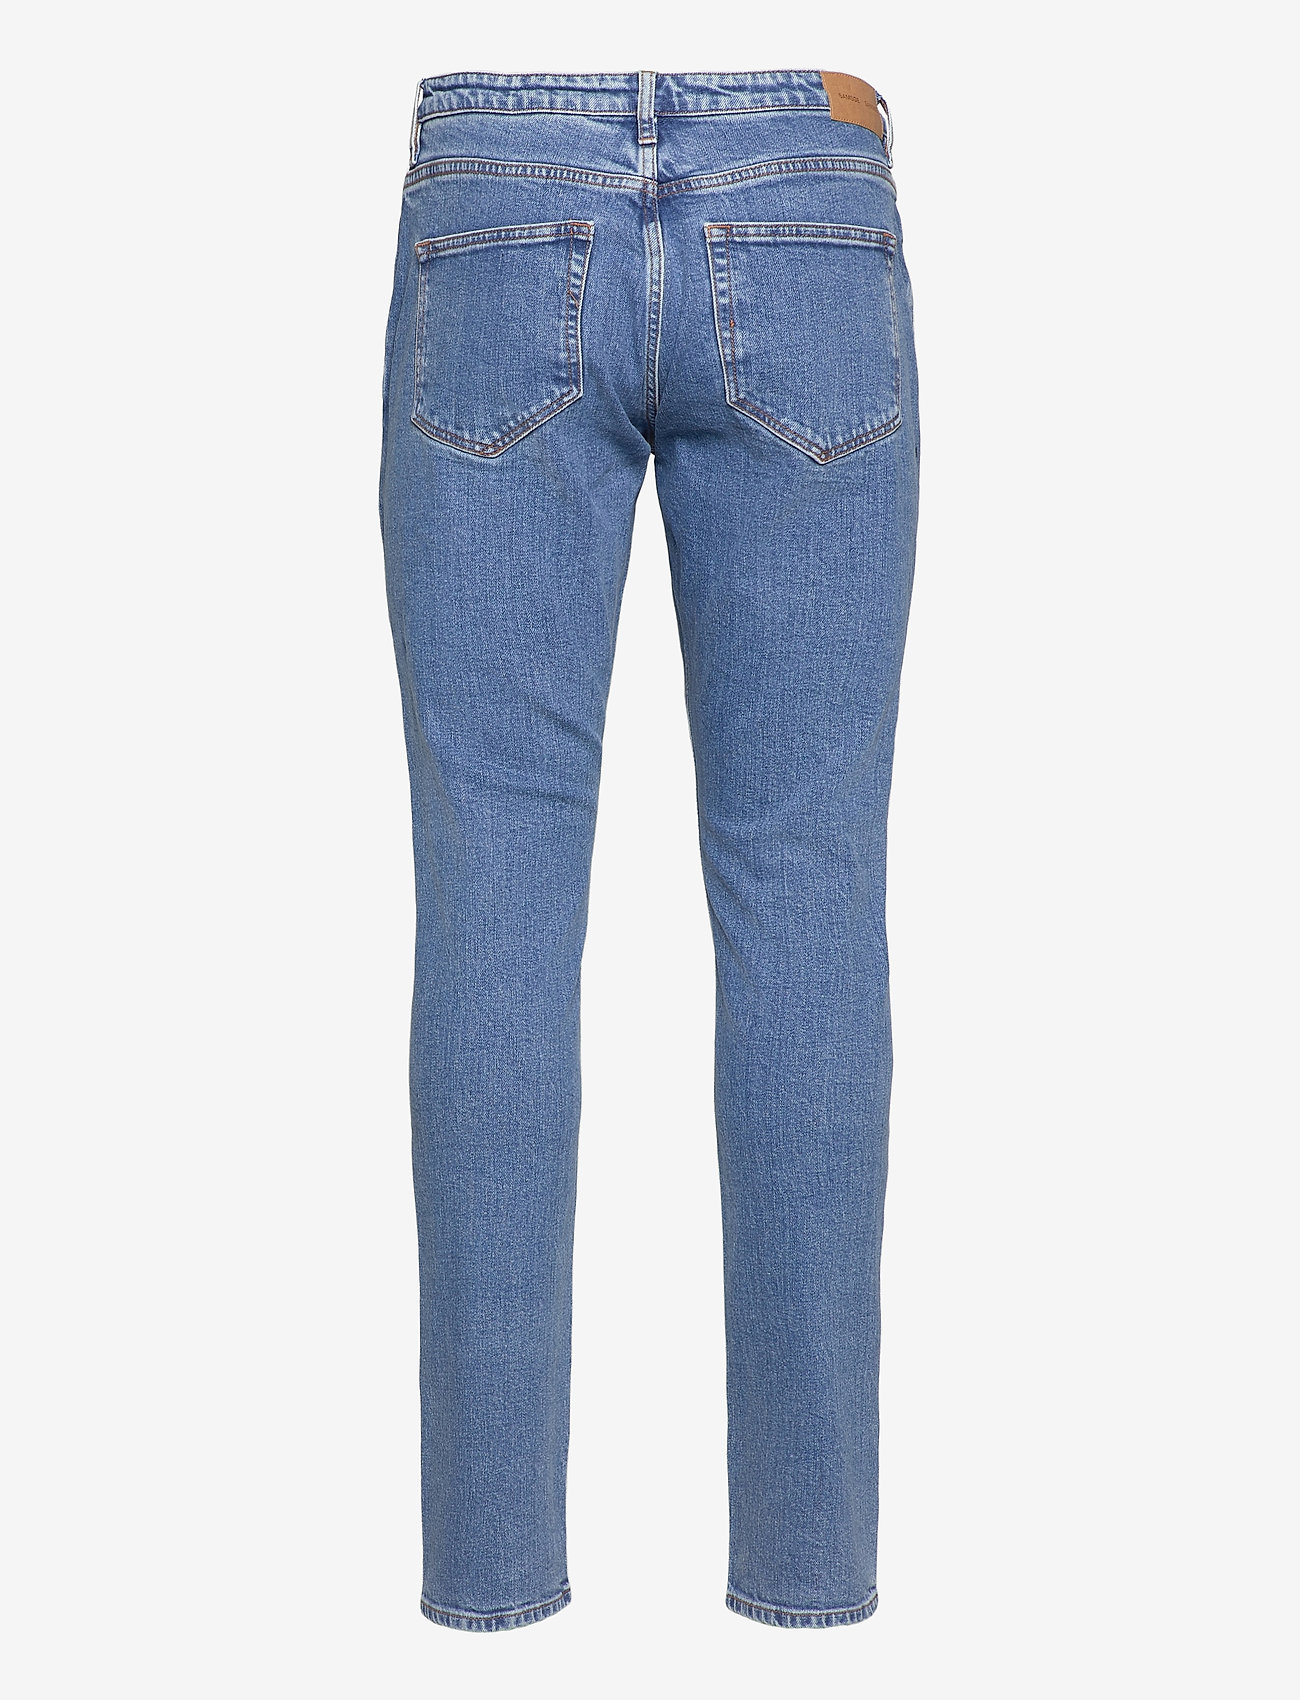 Samsøe Samsøe - Stefan jeans 11354 - džinsi - light ozone marble - 1